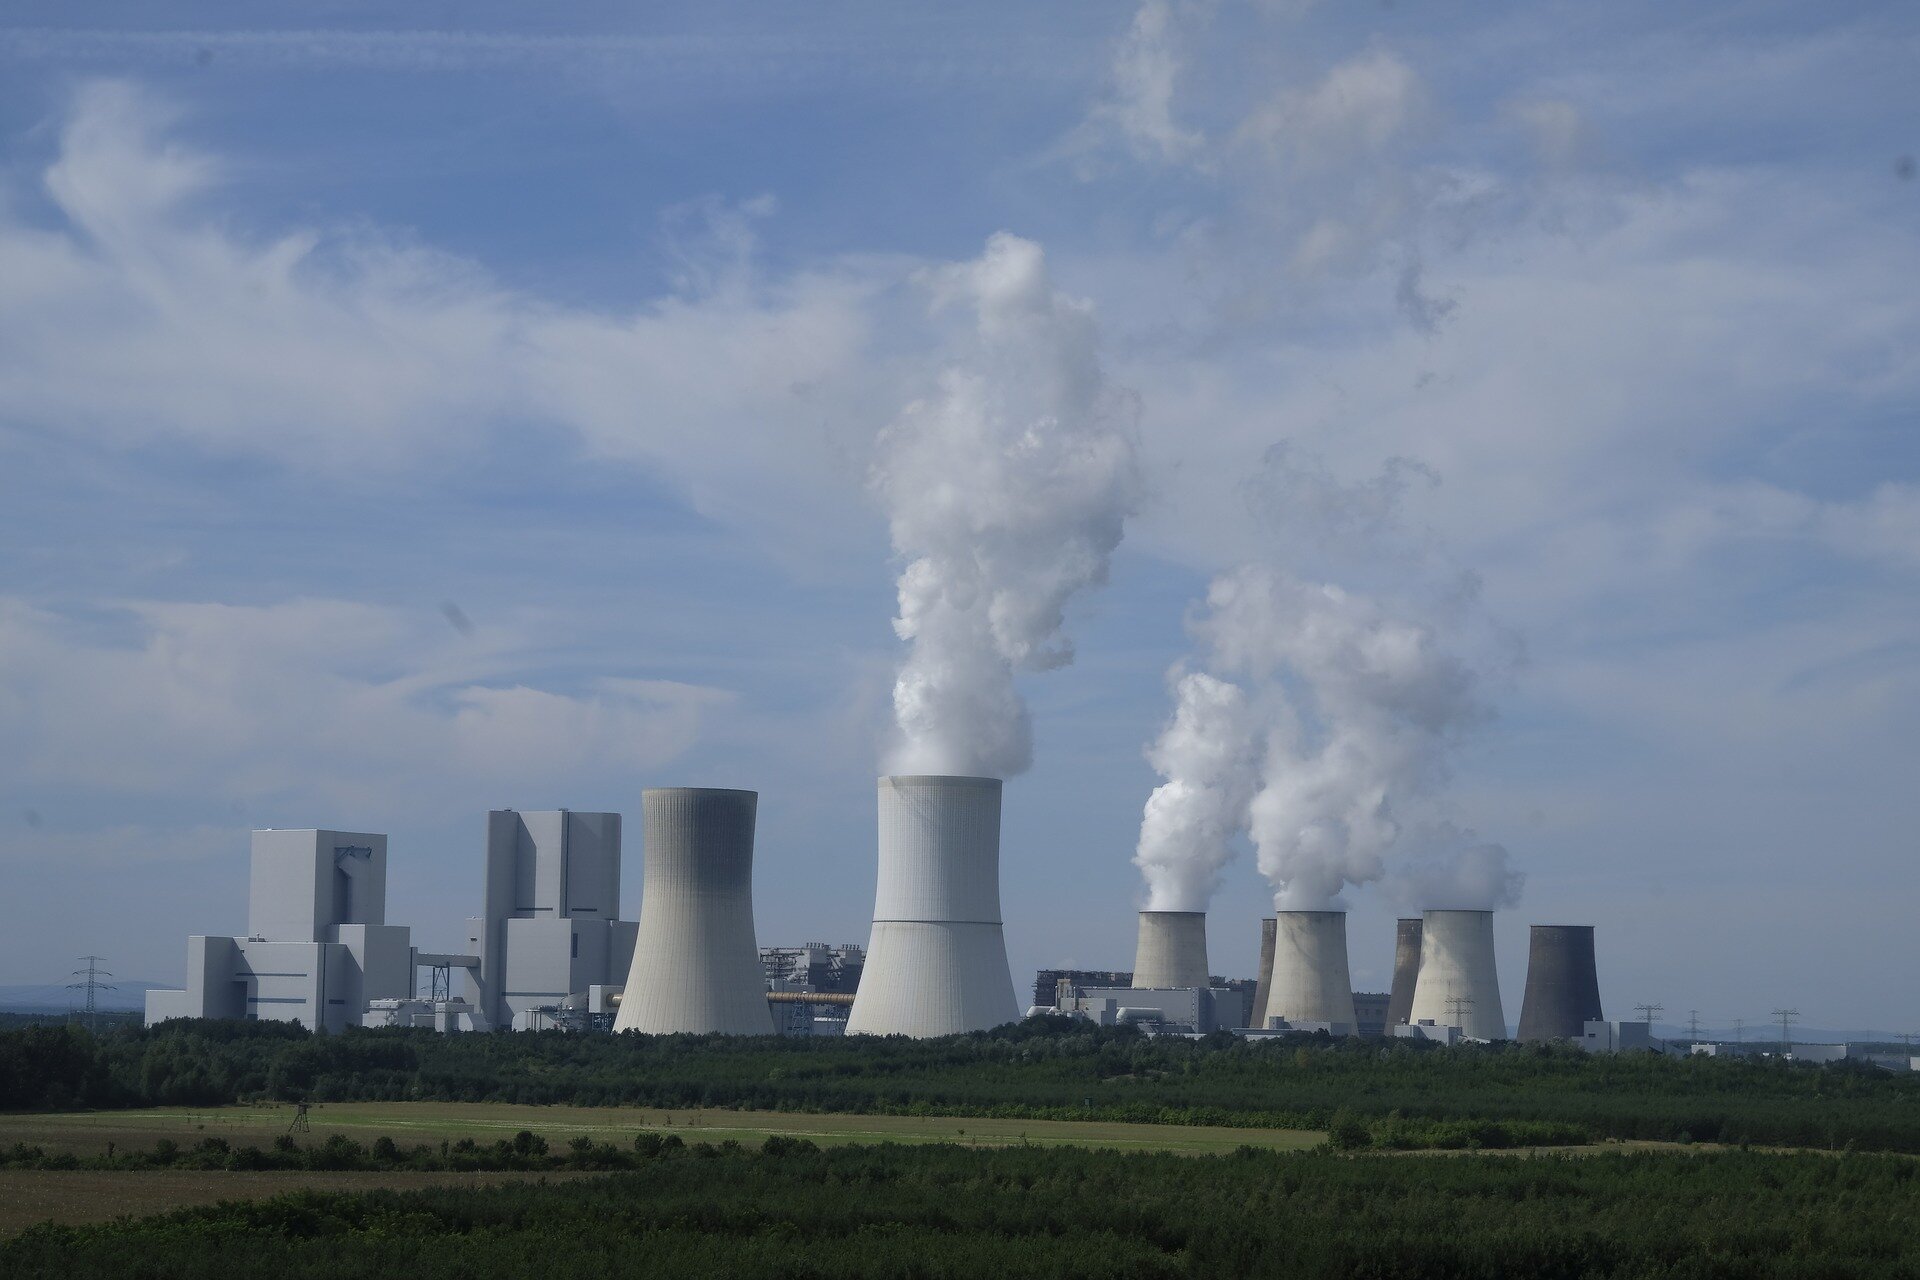 Zdjęcie poglądowe przedstawia przemysłowy pejzaż z ogromnymi kominami, z których wydobywa się biały dym.